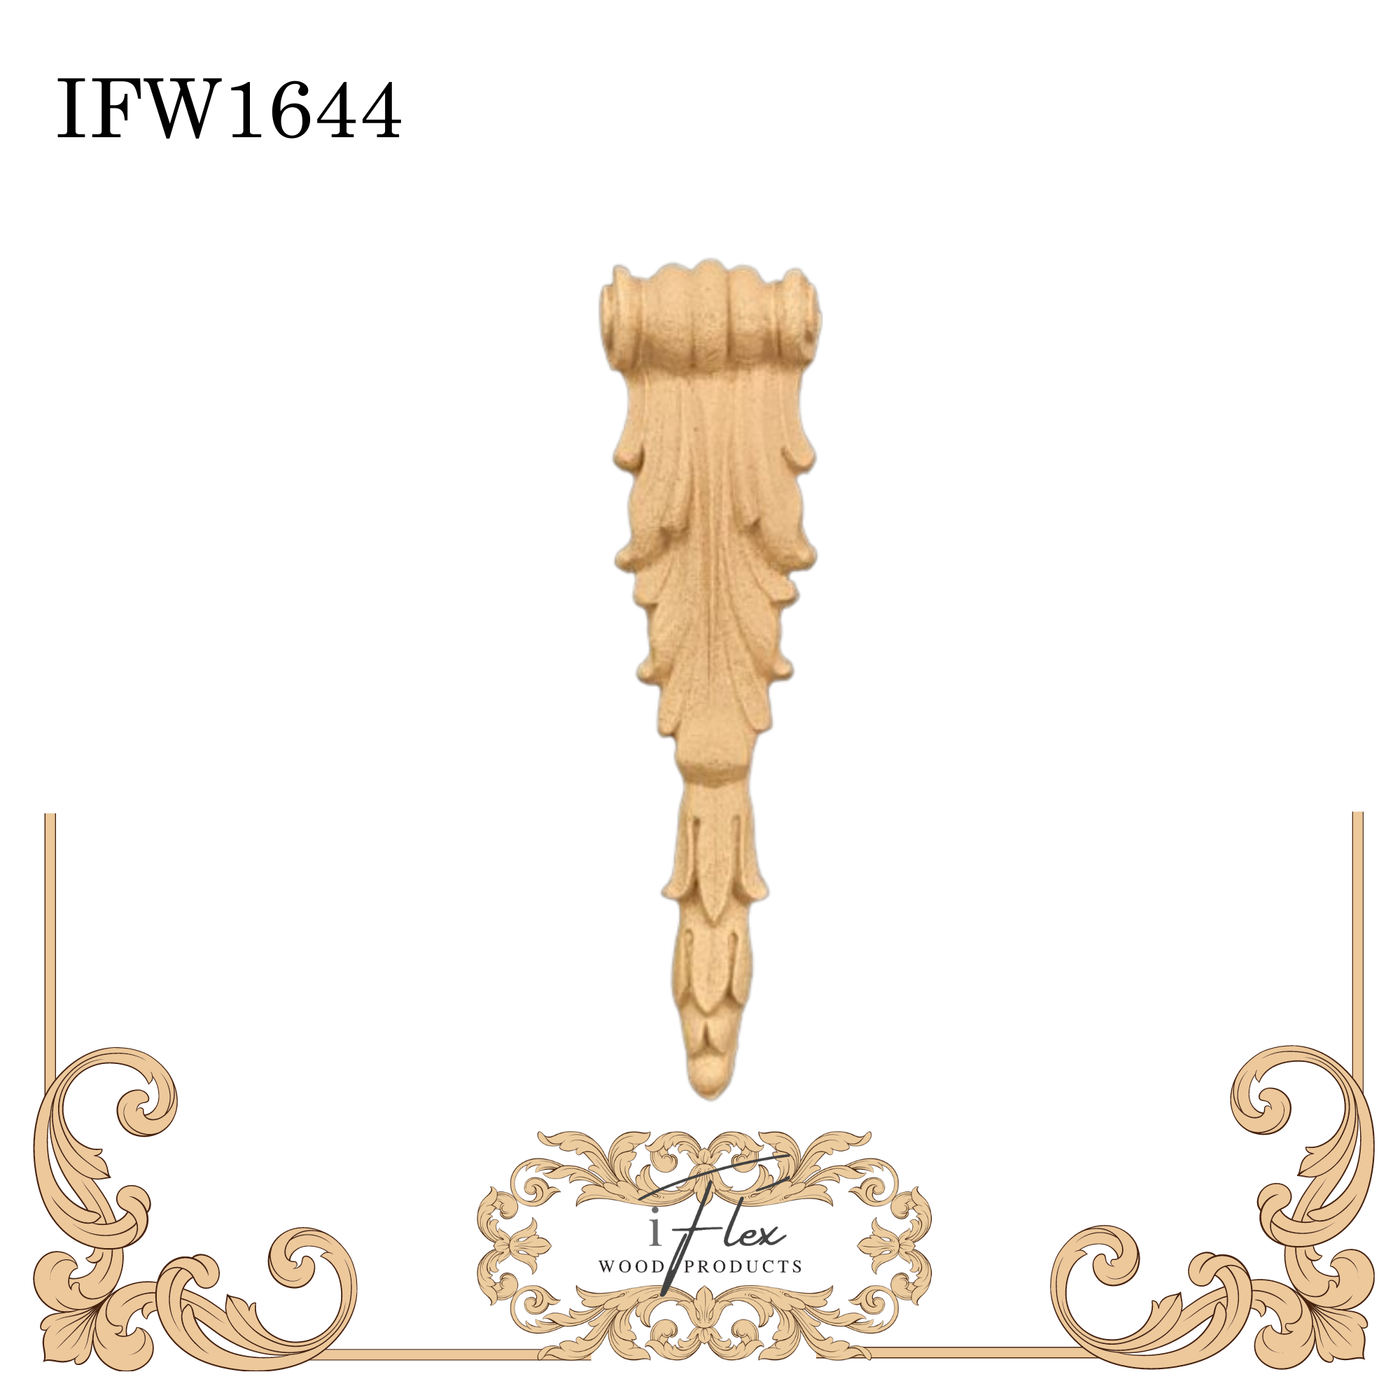 IFW 1644